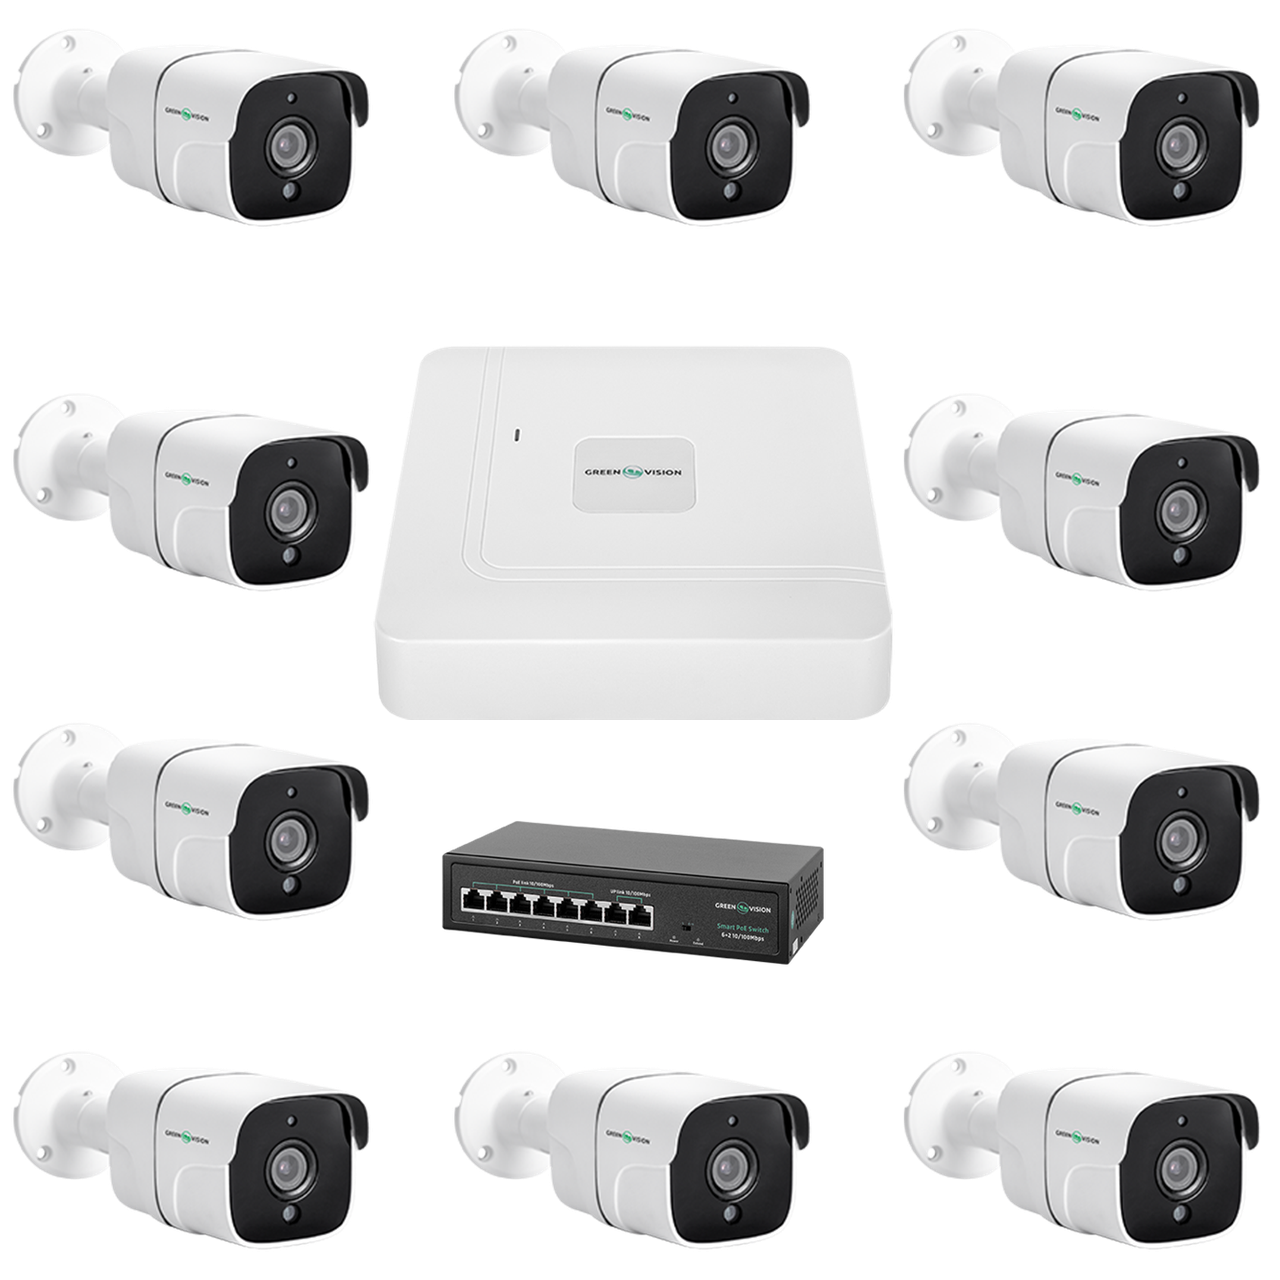 Комплект відеоспостереження на 9 камер GV-IP-K-W78/09 5MP